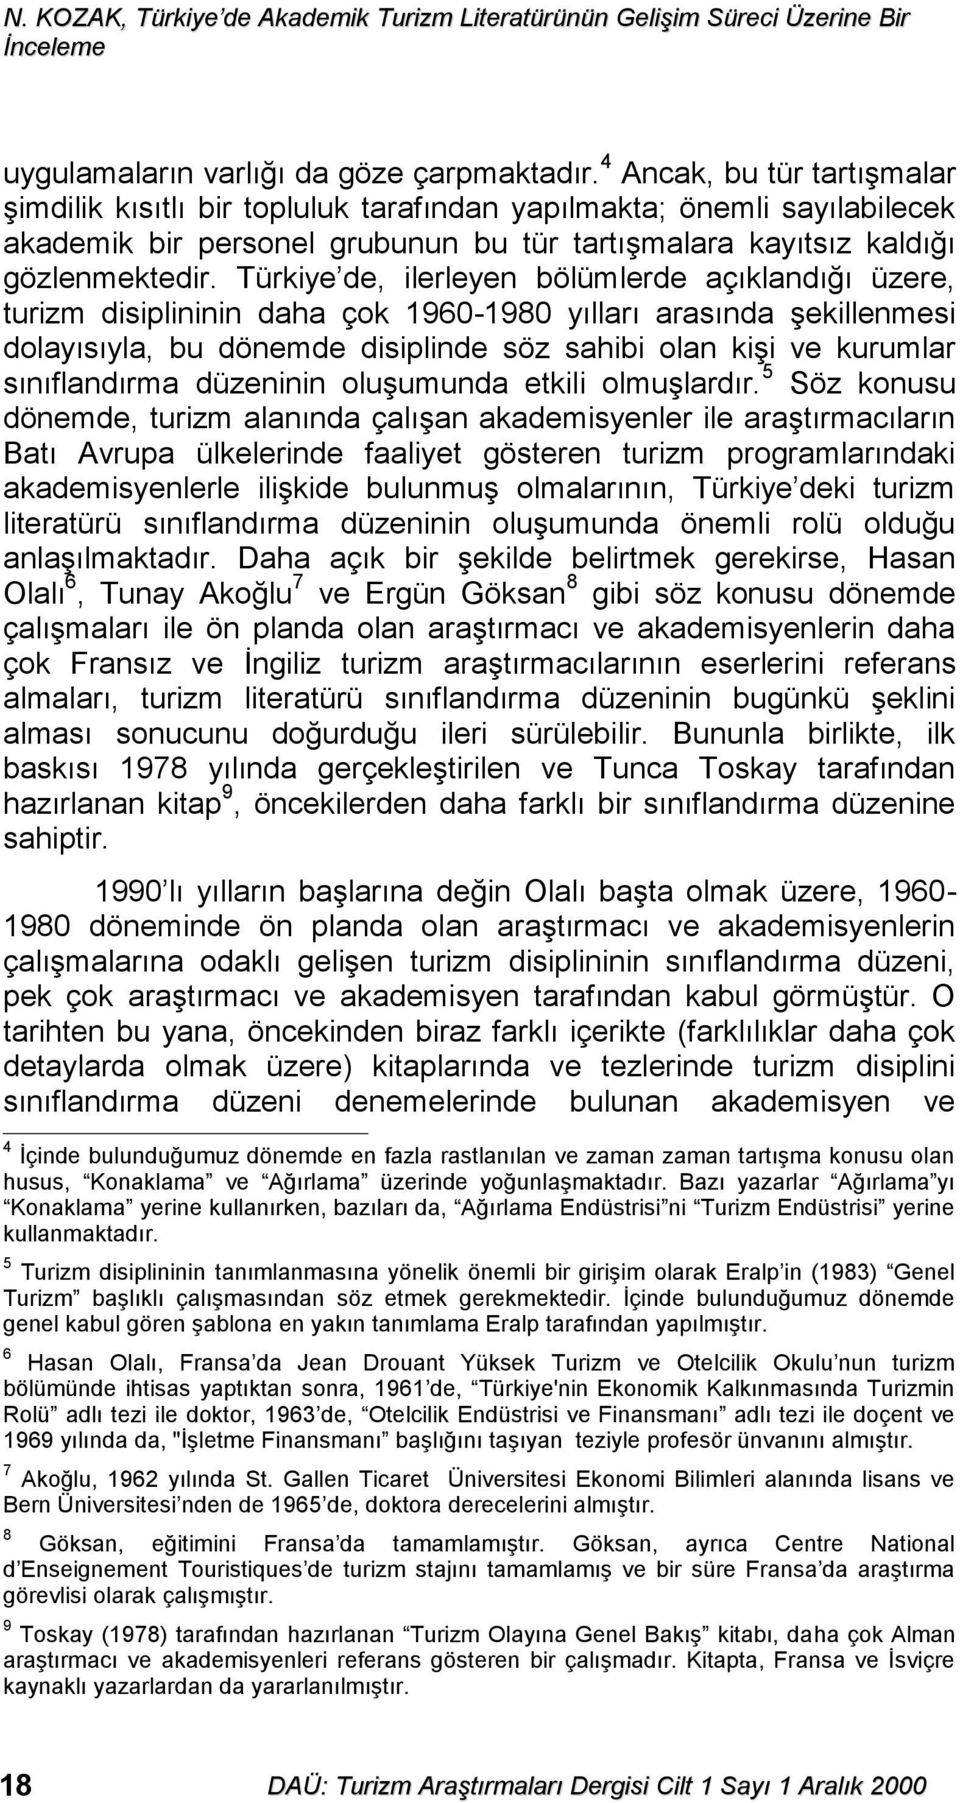 Türkiye de, ilerleyen bölümlerde açıklandığı üzere, turizm disiplininin daha çok 1960-1980 yılları arasında şekillenmesi dolayısıyla, bu dönemde disiplinde söz sahibi olan kişi ve kurumlar